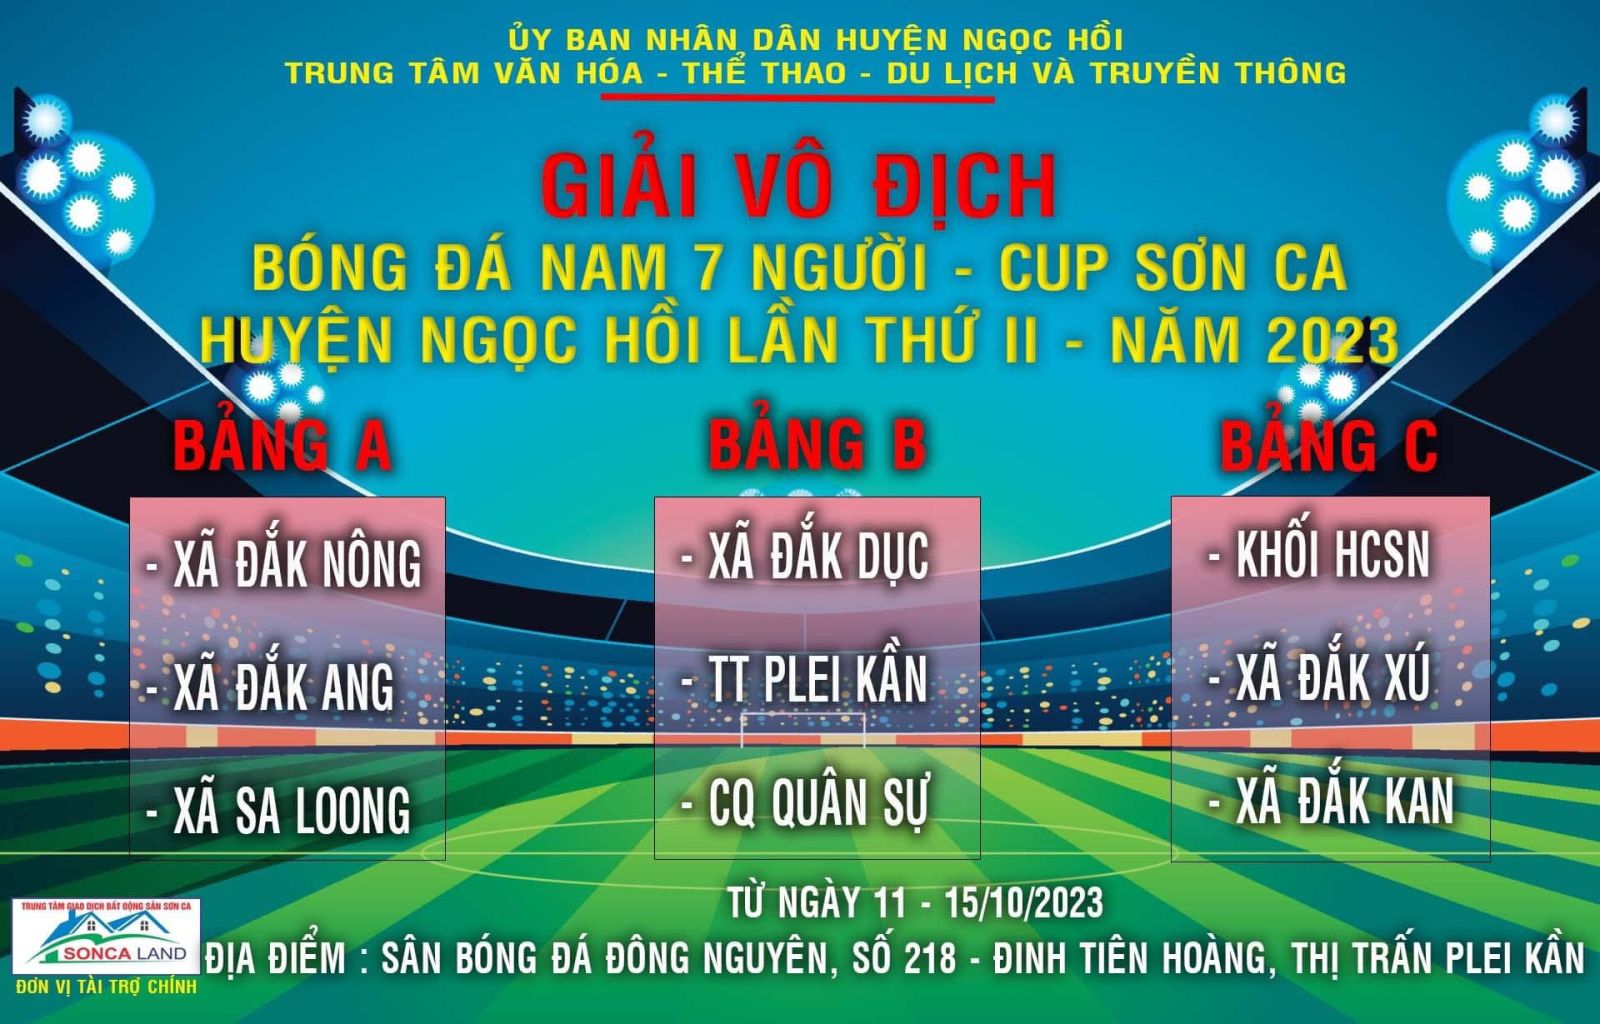 Giải Vô địch bóng đá nam 7 người - Cup SƠN CA huyện Ngọc Hồi lần thứ II - năm 2023 chào mừng kỷ niệm 32 năm ngày thành lập huyện Ngọc Hồi (15/10/1991 - 15/10/2023).